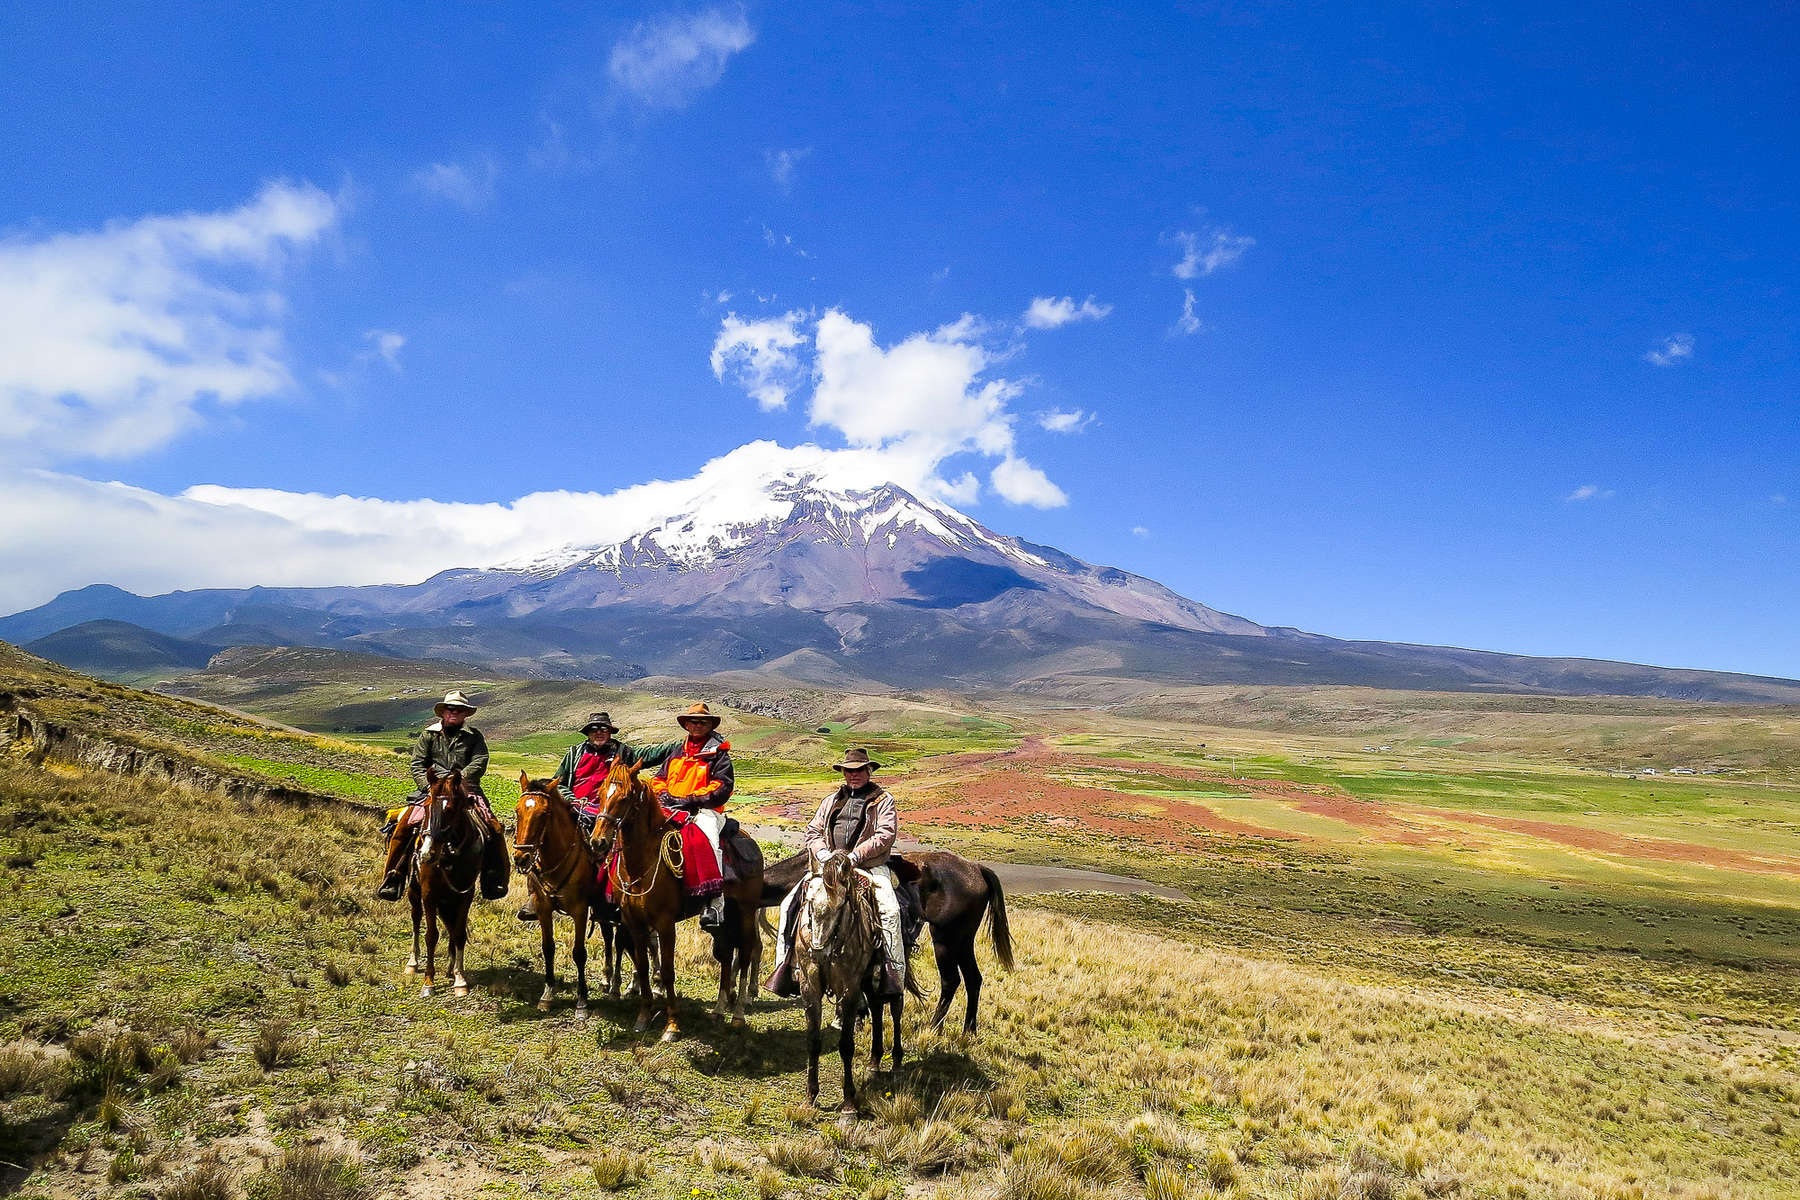 Riders in front of Cotopaxi volcano in Ecuador